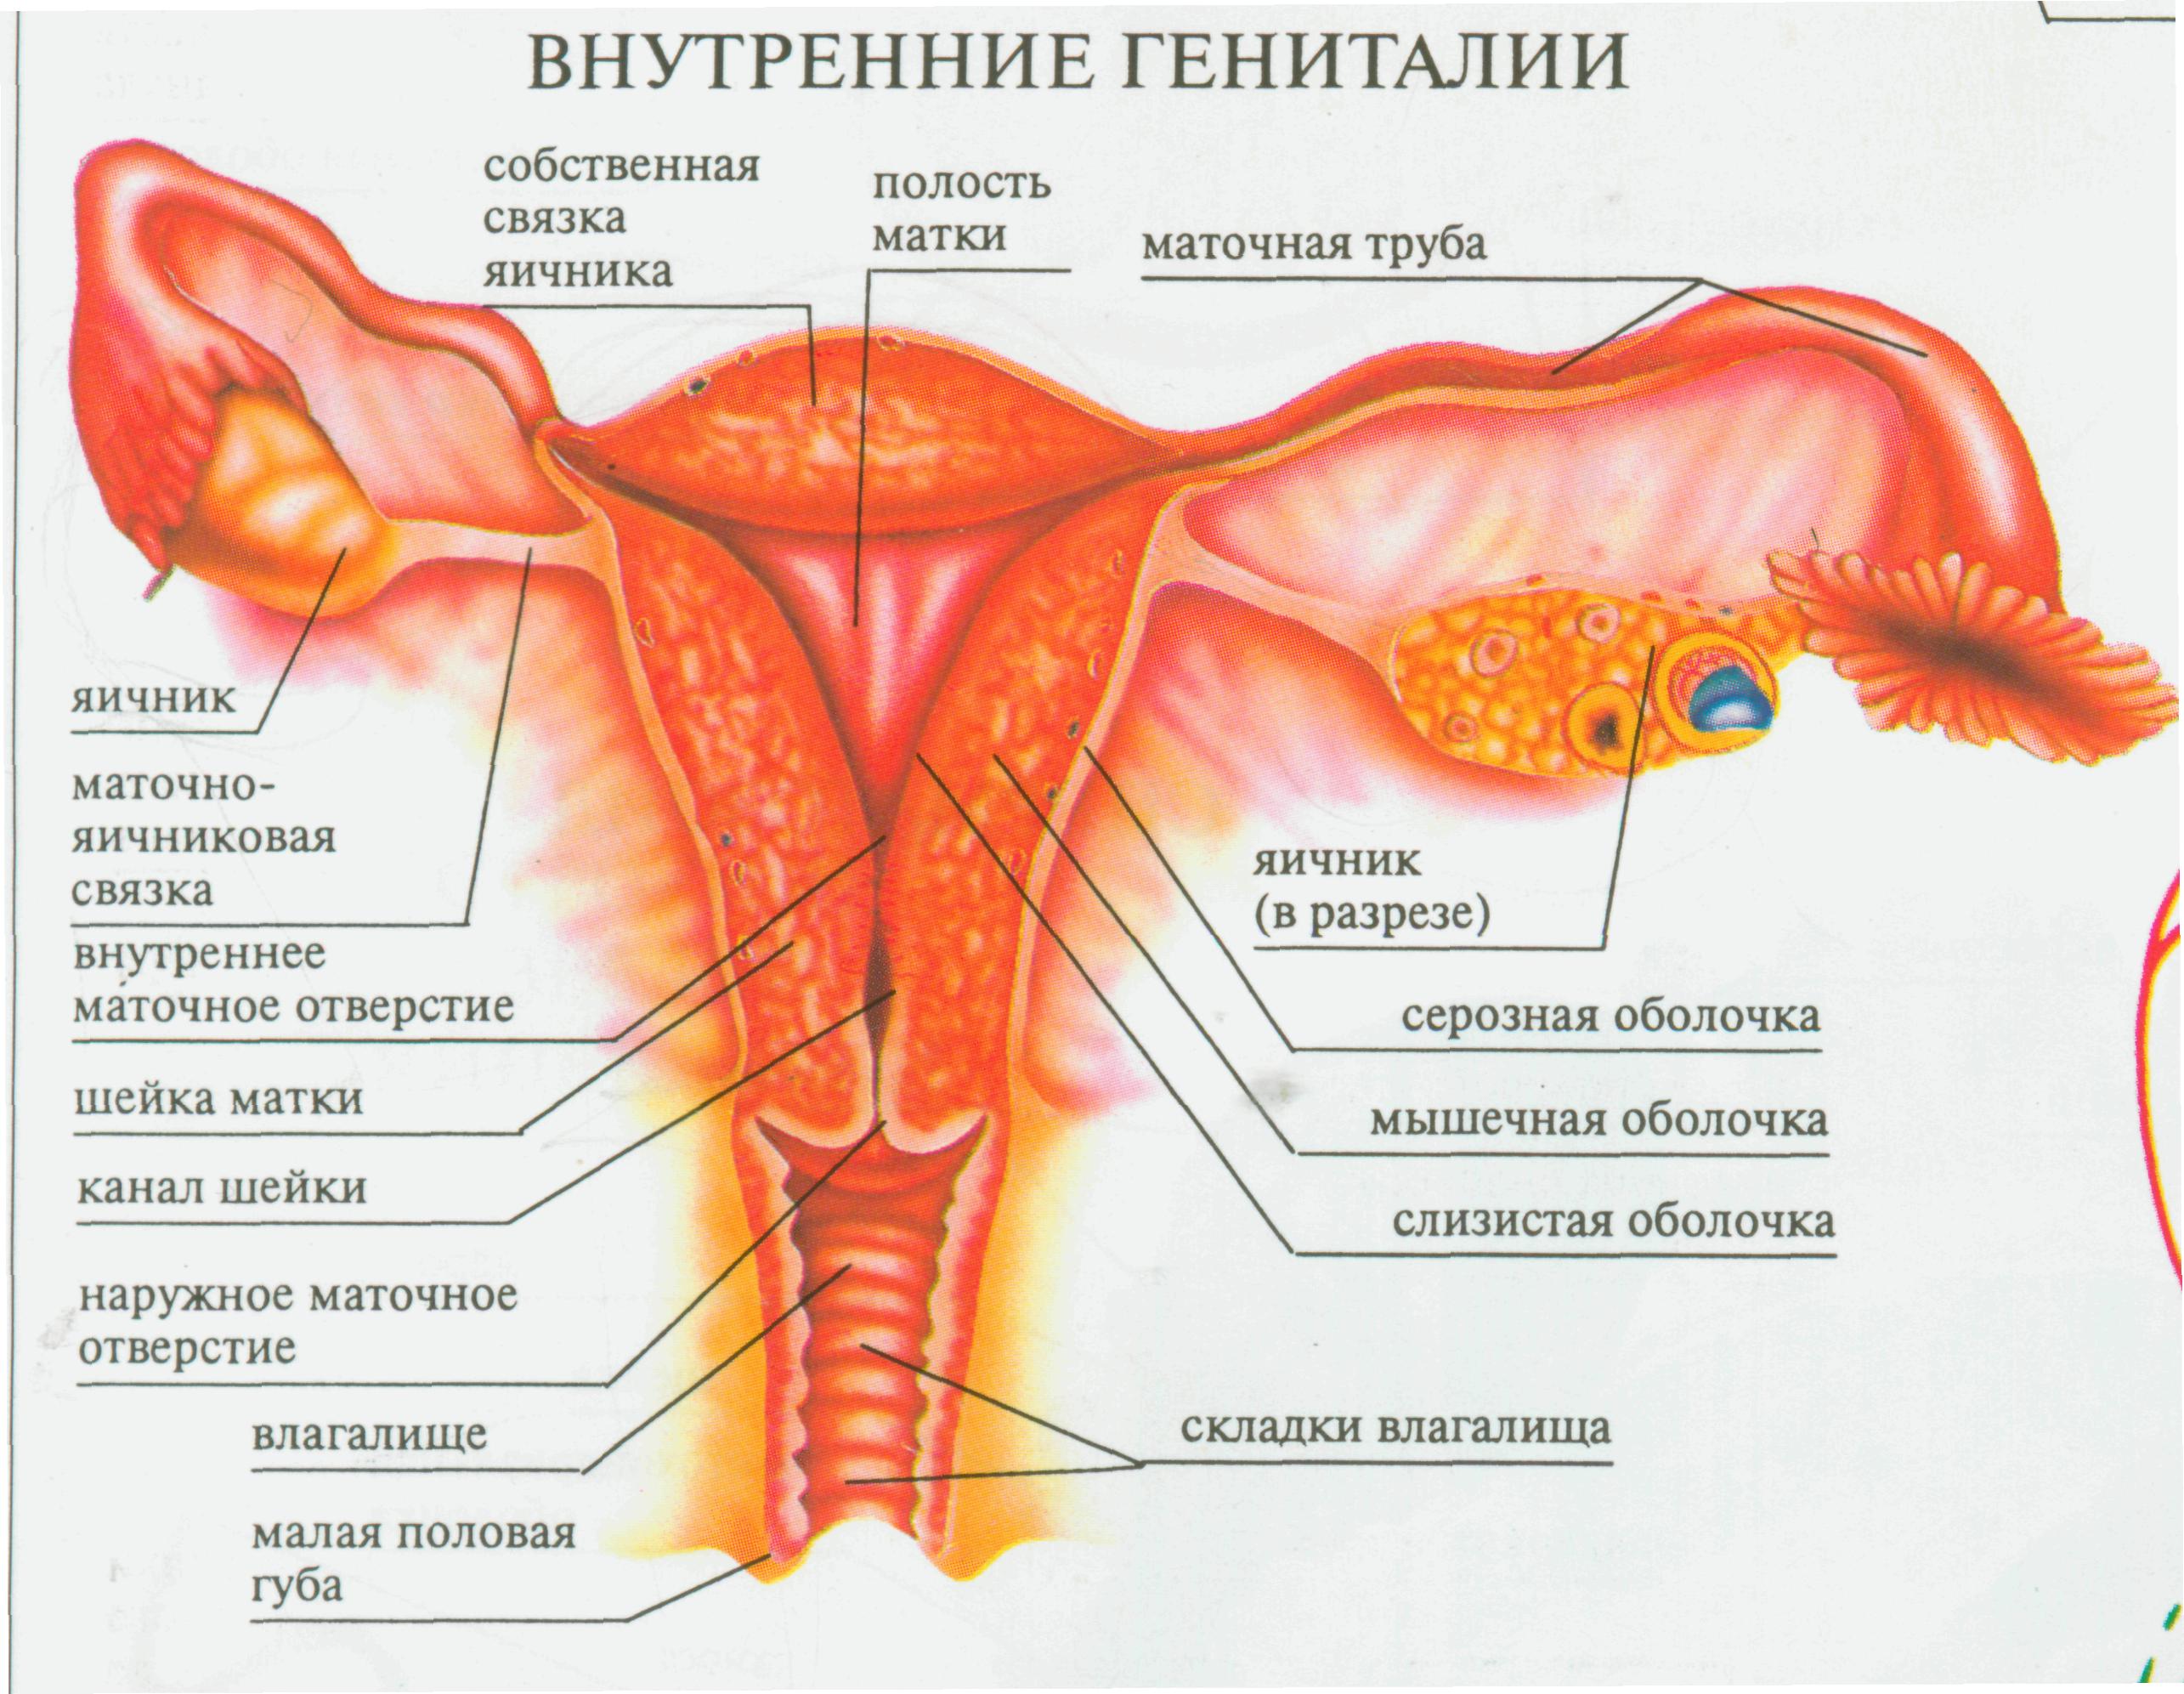 Женская внутренняя половая система. Женский половой орган. Строение половых органов женщины. Строение женских.половых органов внутренних. Схема половых органов женщины.